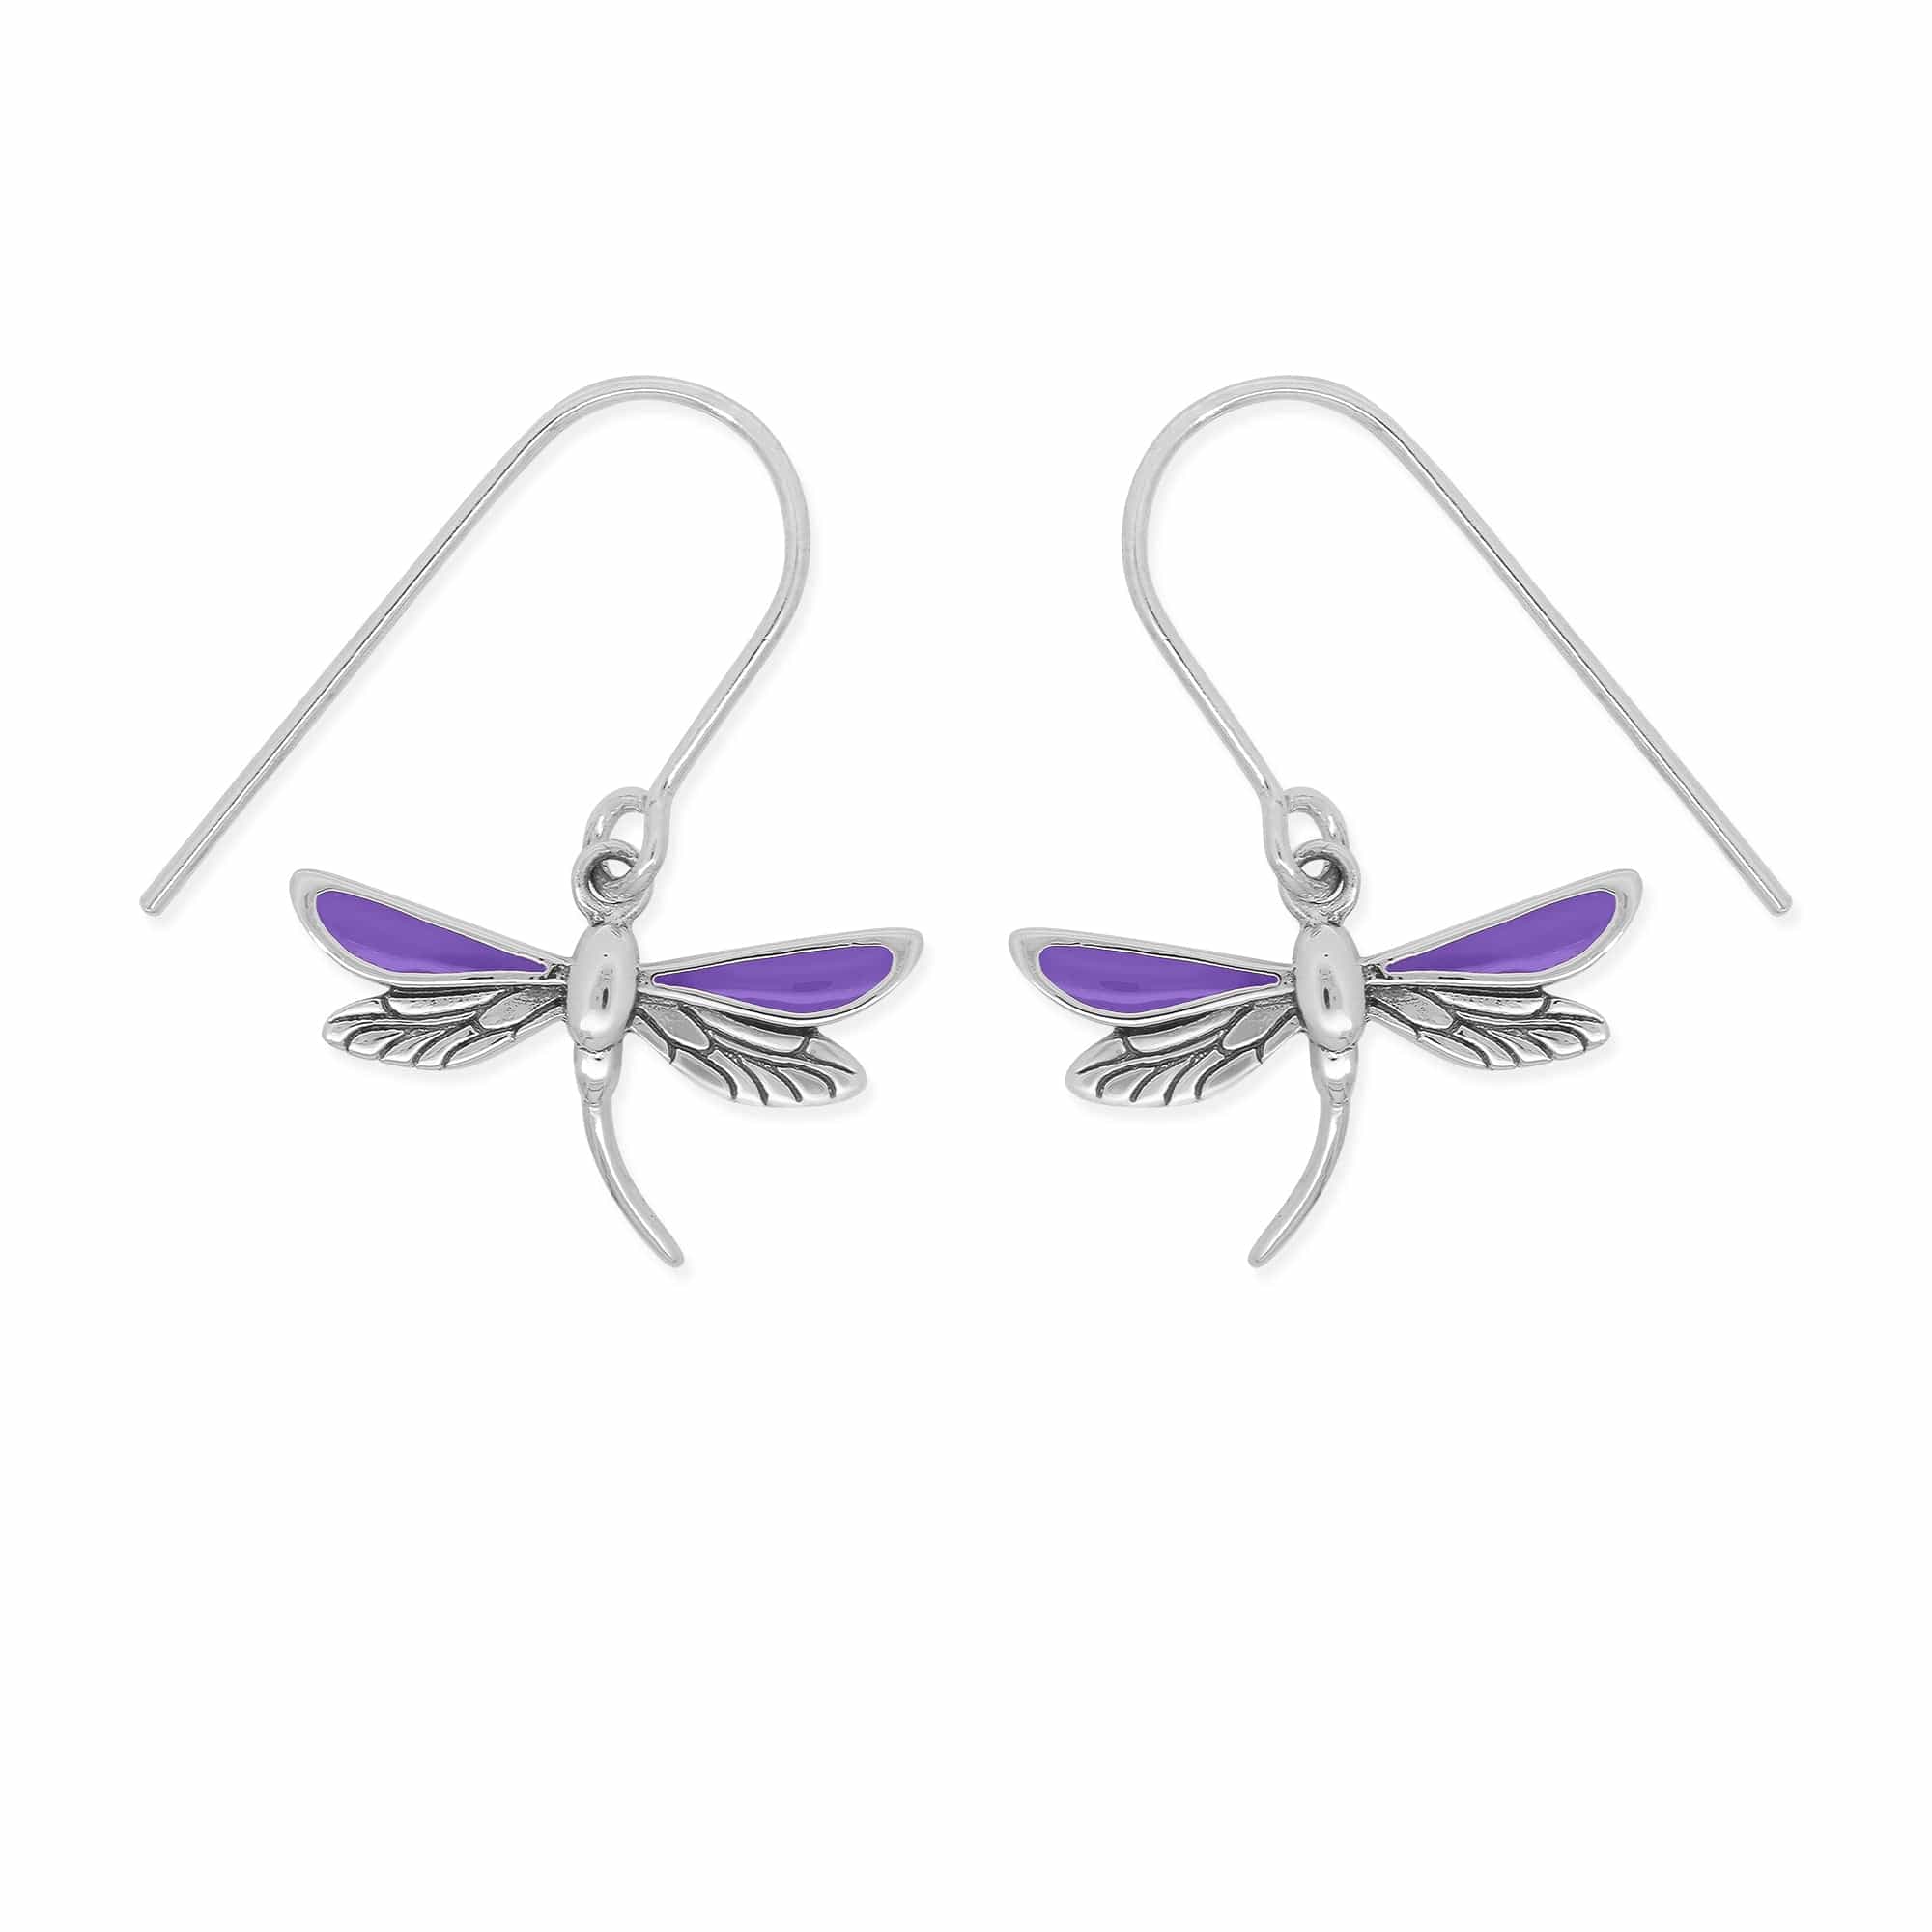 Boma Jewelry Earrings Purple Dragonfly Dangle Earrings with Enamel